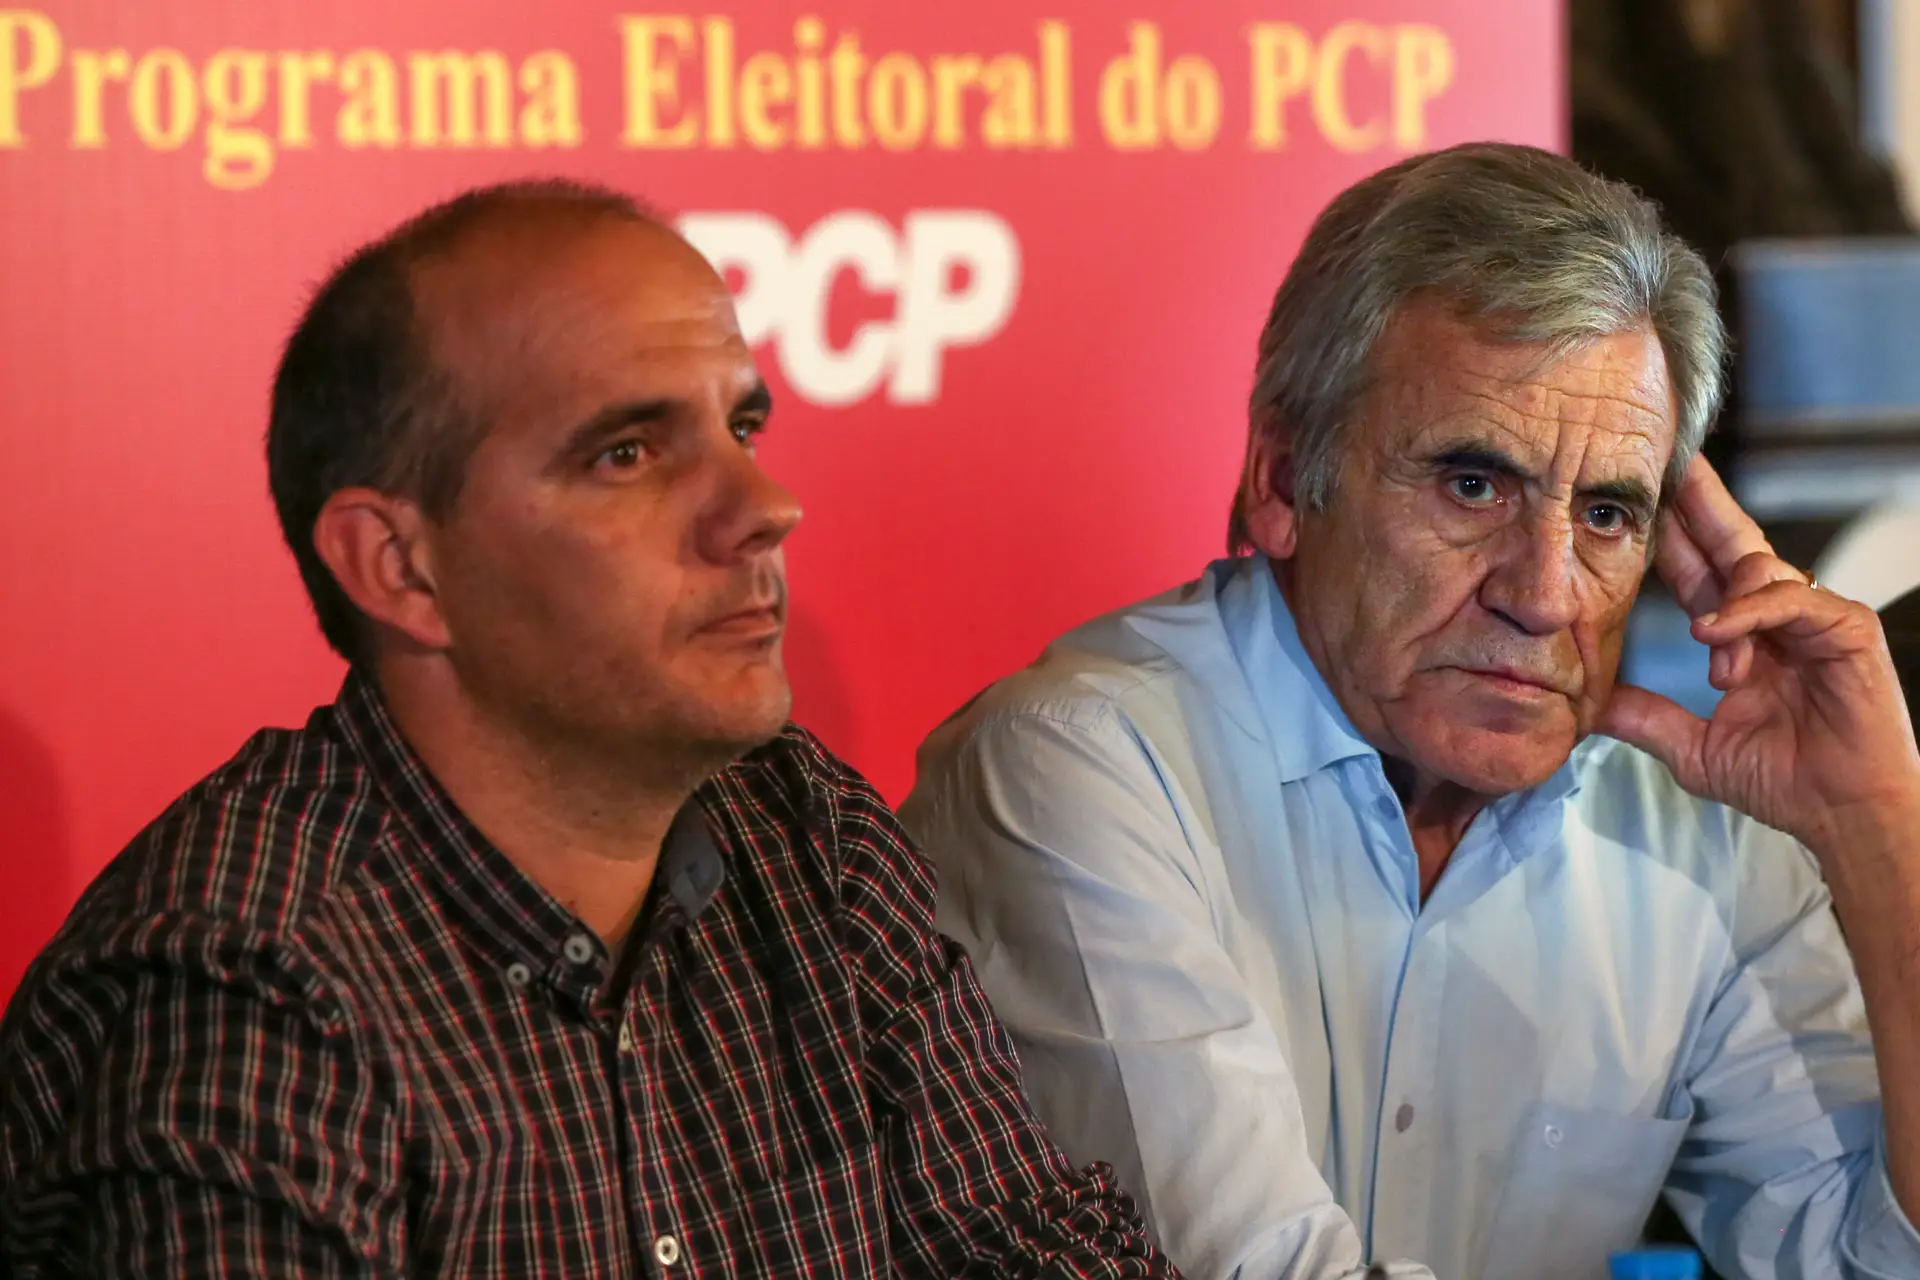 Paulo Raimundo à esquerda de Jerónimo de Sousa, em abril de 2015